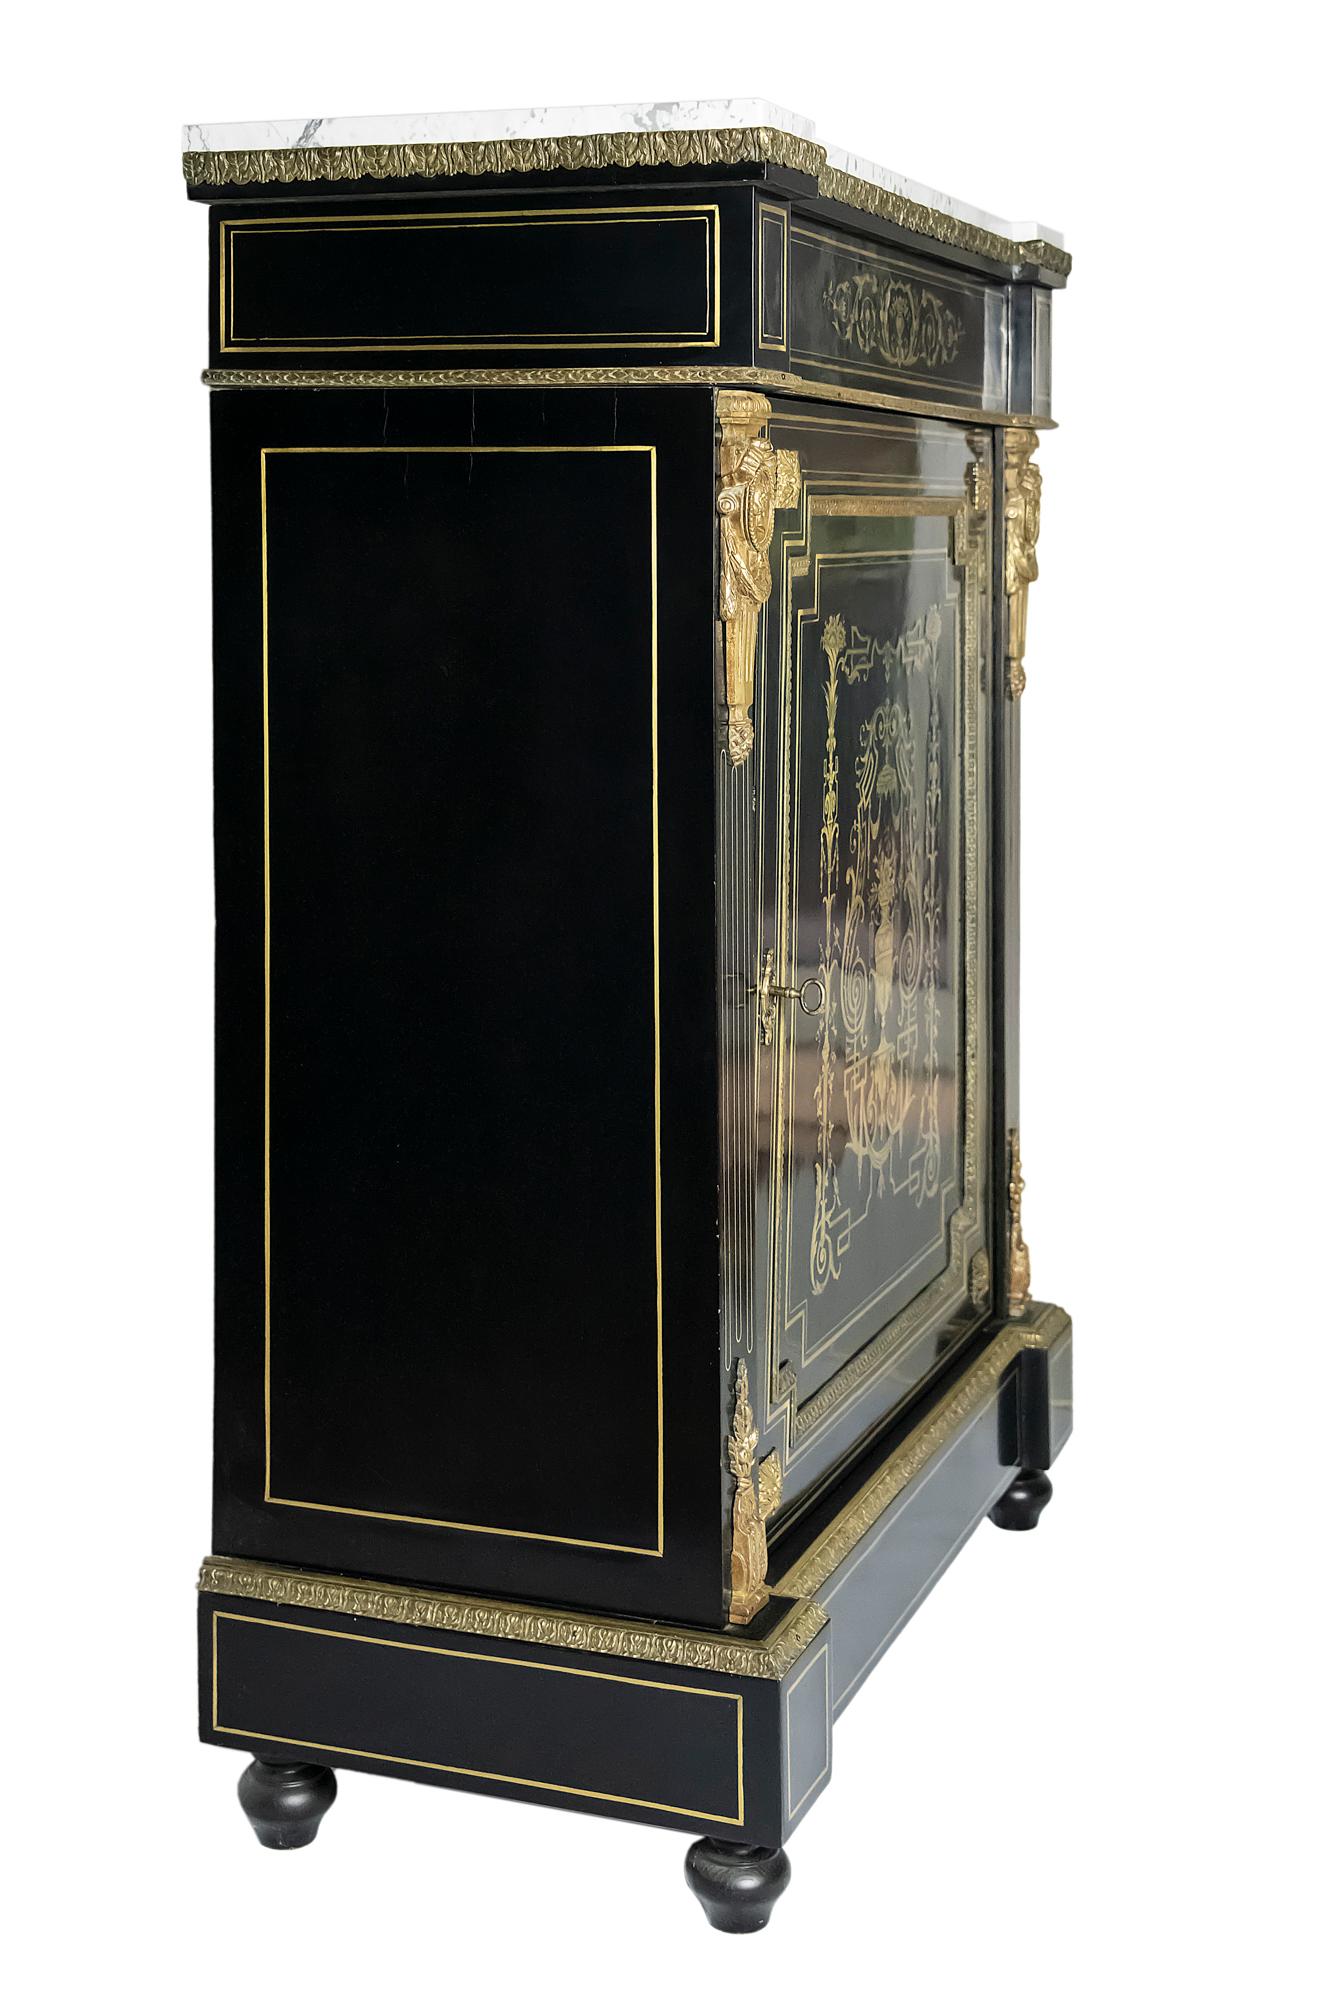 Französischer antiker Schrank Napoleon III.
Das Holz hat eine polierte Oberfläche in schwarzer Farbe und ist mit eingelegtem Messingdekor und Bronzedetails verziert.
Im Inneren des Schranks befinden sich zwei Einlegeböden.
Die Oberfläche des